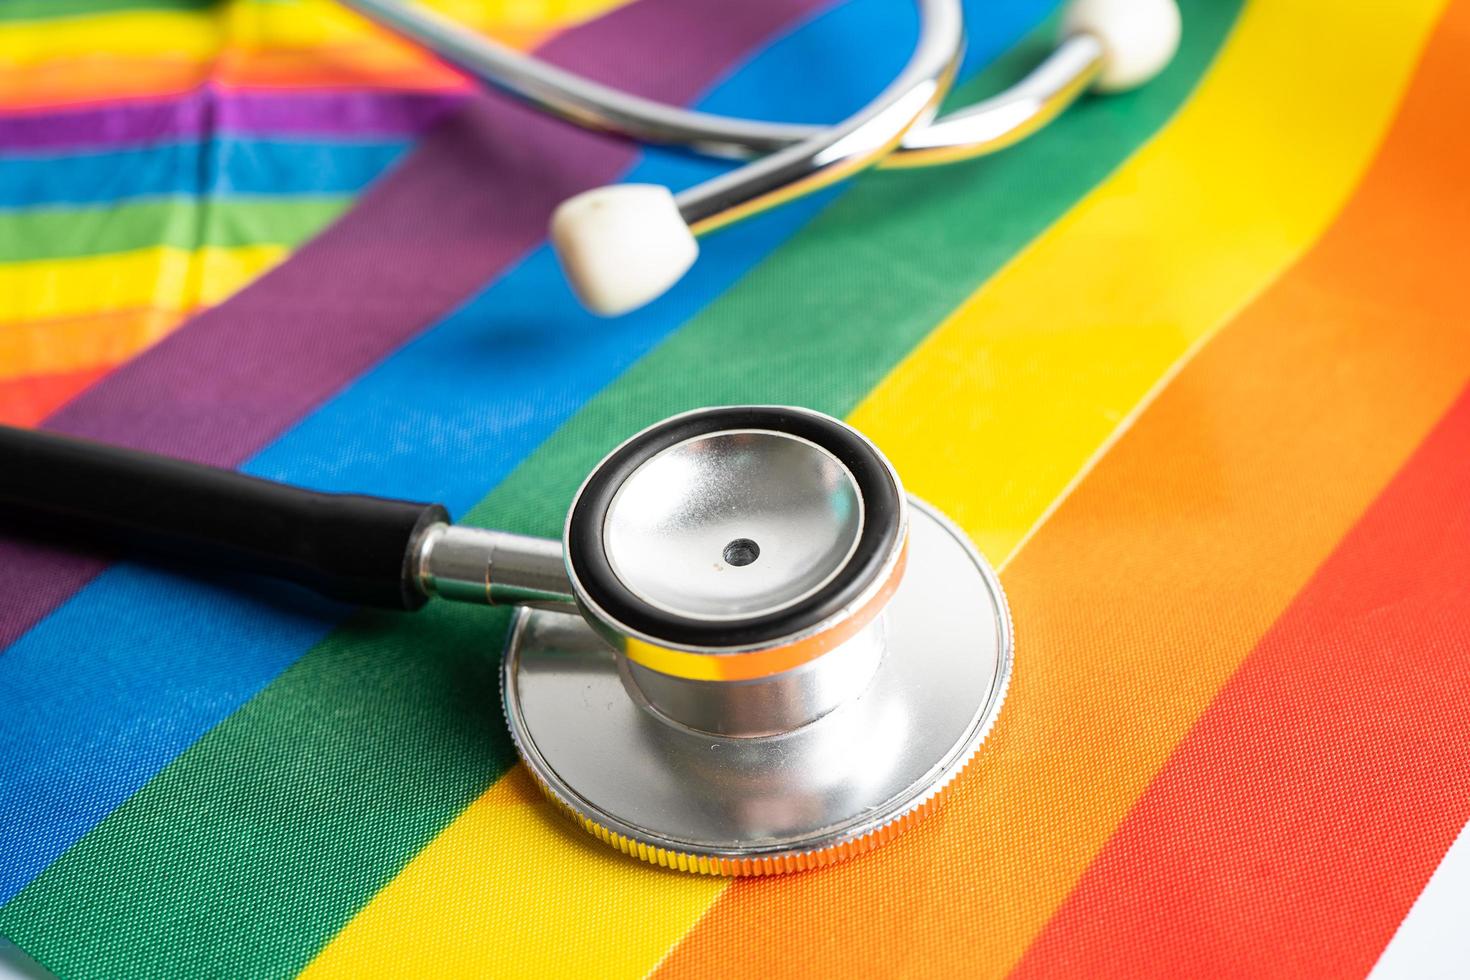 svart stetoskop på regnbågsflagga bakgrund, symbol för lgbt pride månad fira årliga i juni social, symbol för homosexuella, lesbiska, bisexuella, transpersoner, mänskliga rättigheter och fred. foto